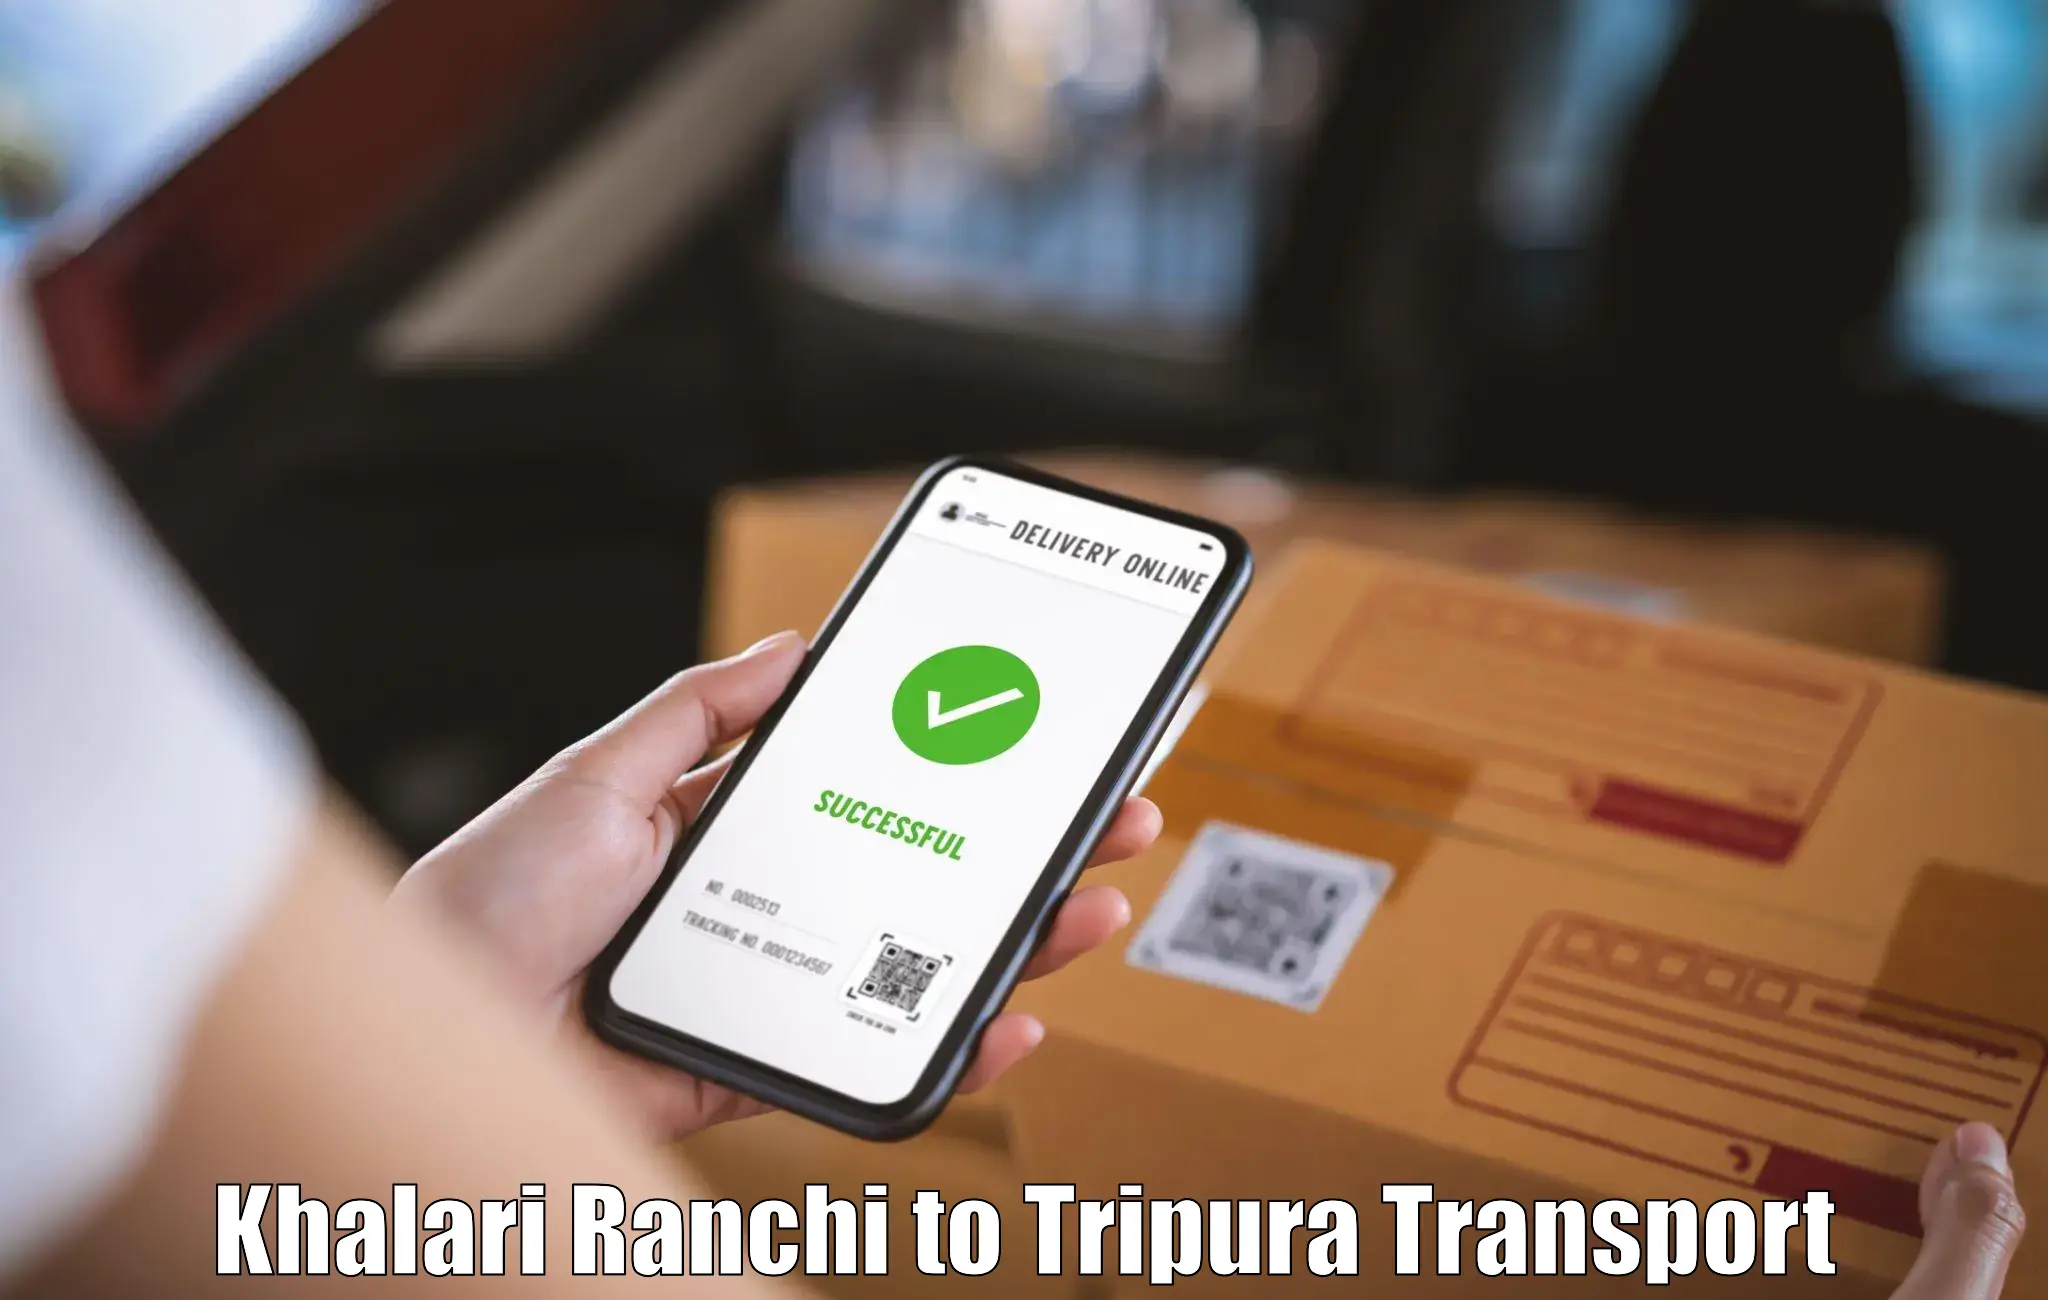 Truck transport companies in India Khalari Ranchi to Bishalgarh